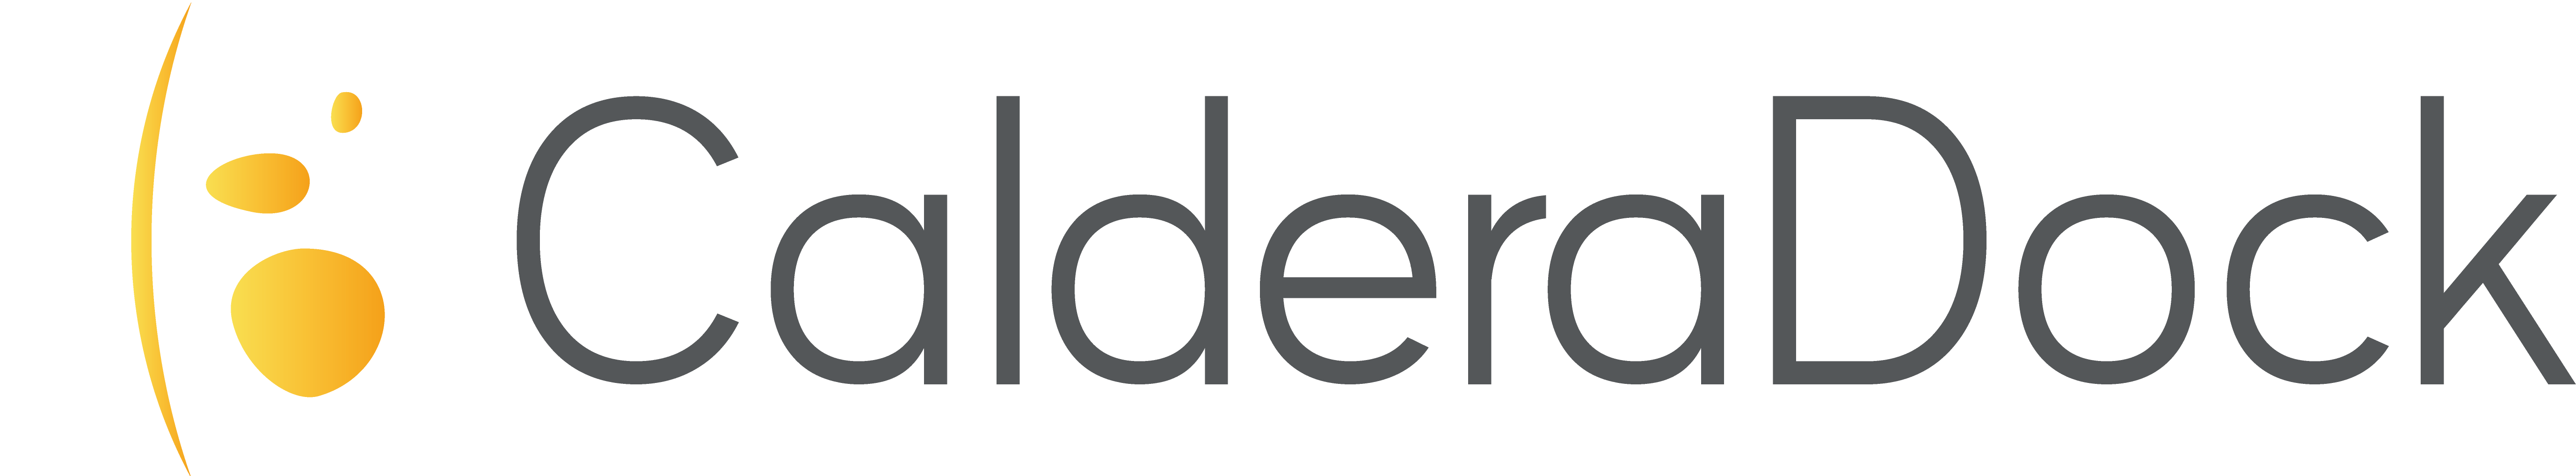 CalderaDock_logo_gradient.png